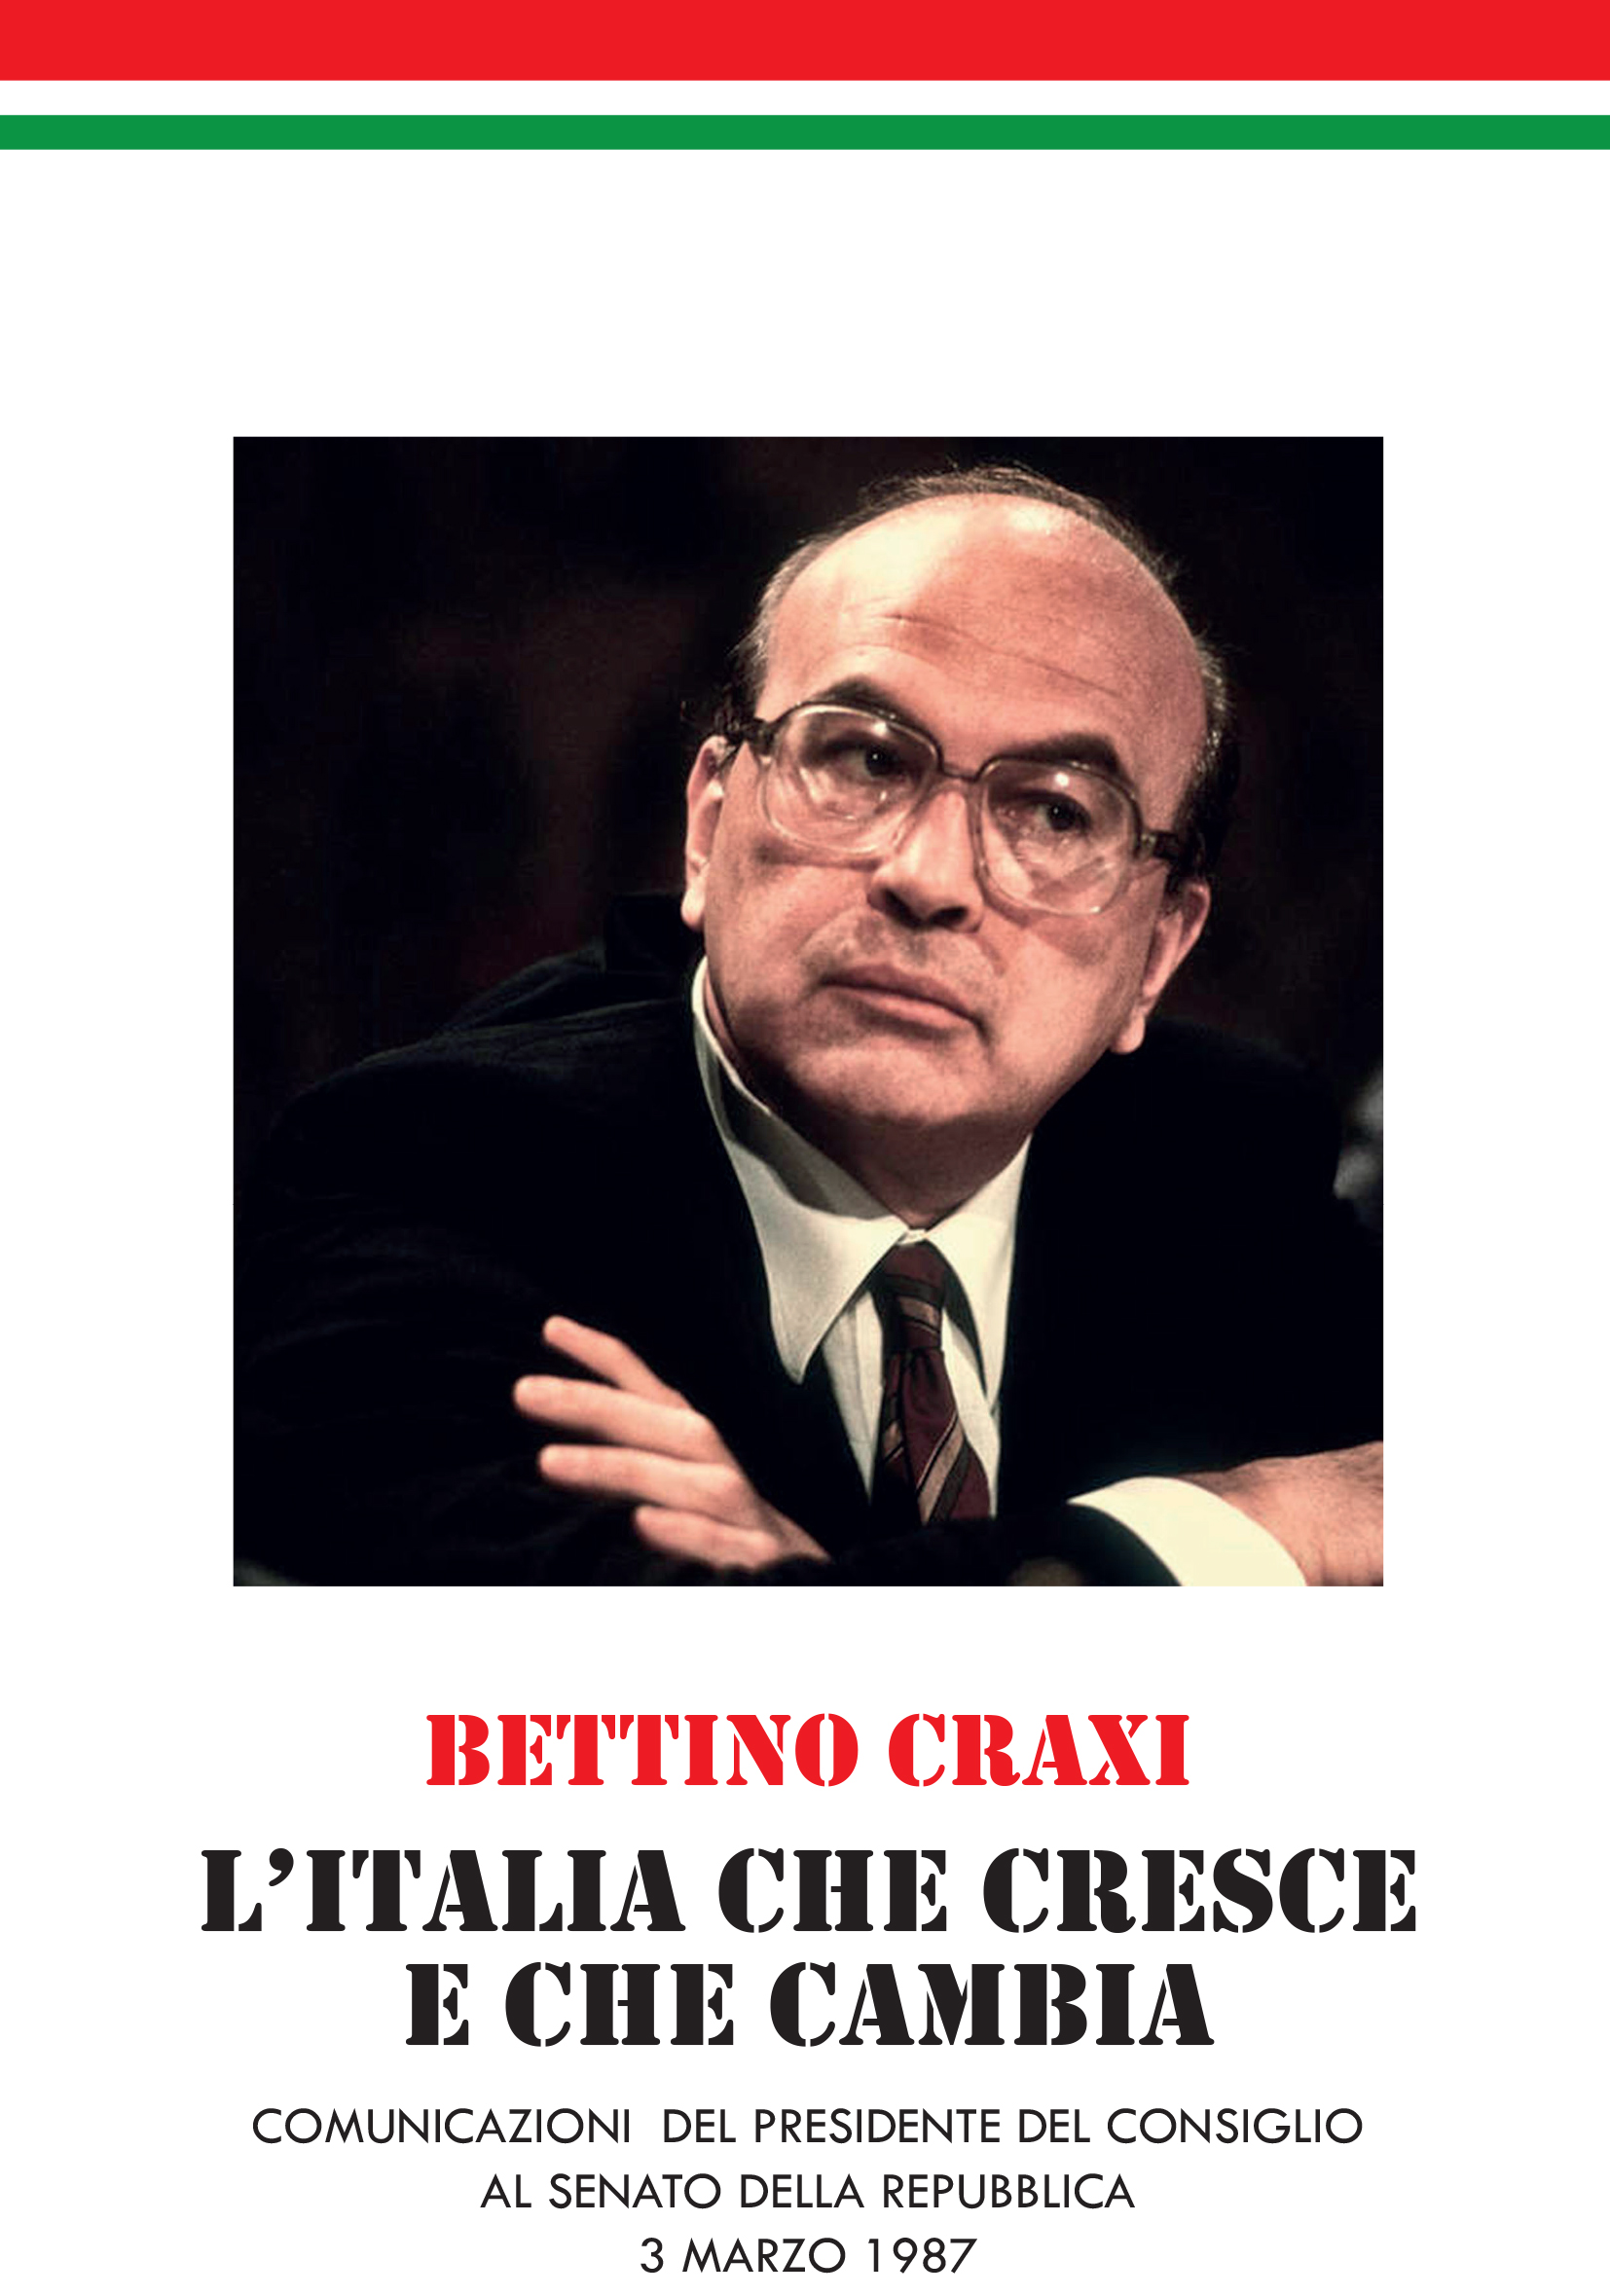 Bettino Craxi - L'Italia che cresce e cambia